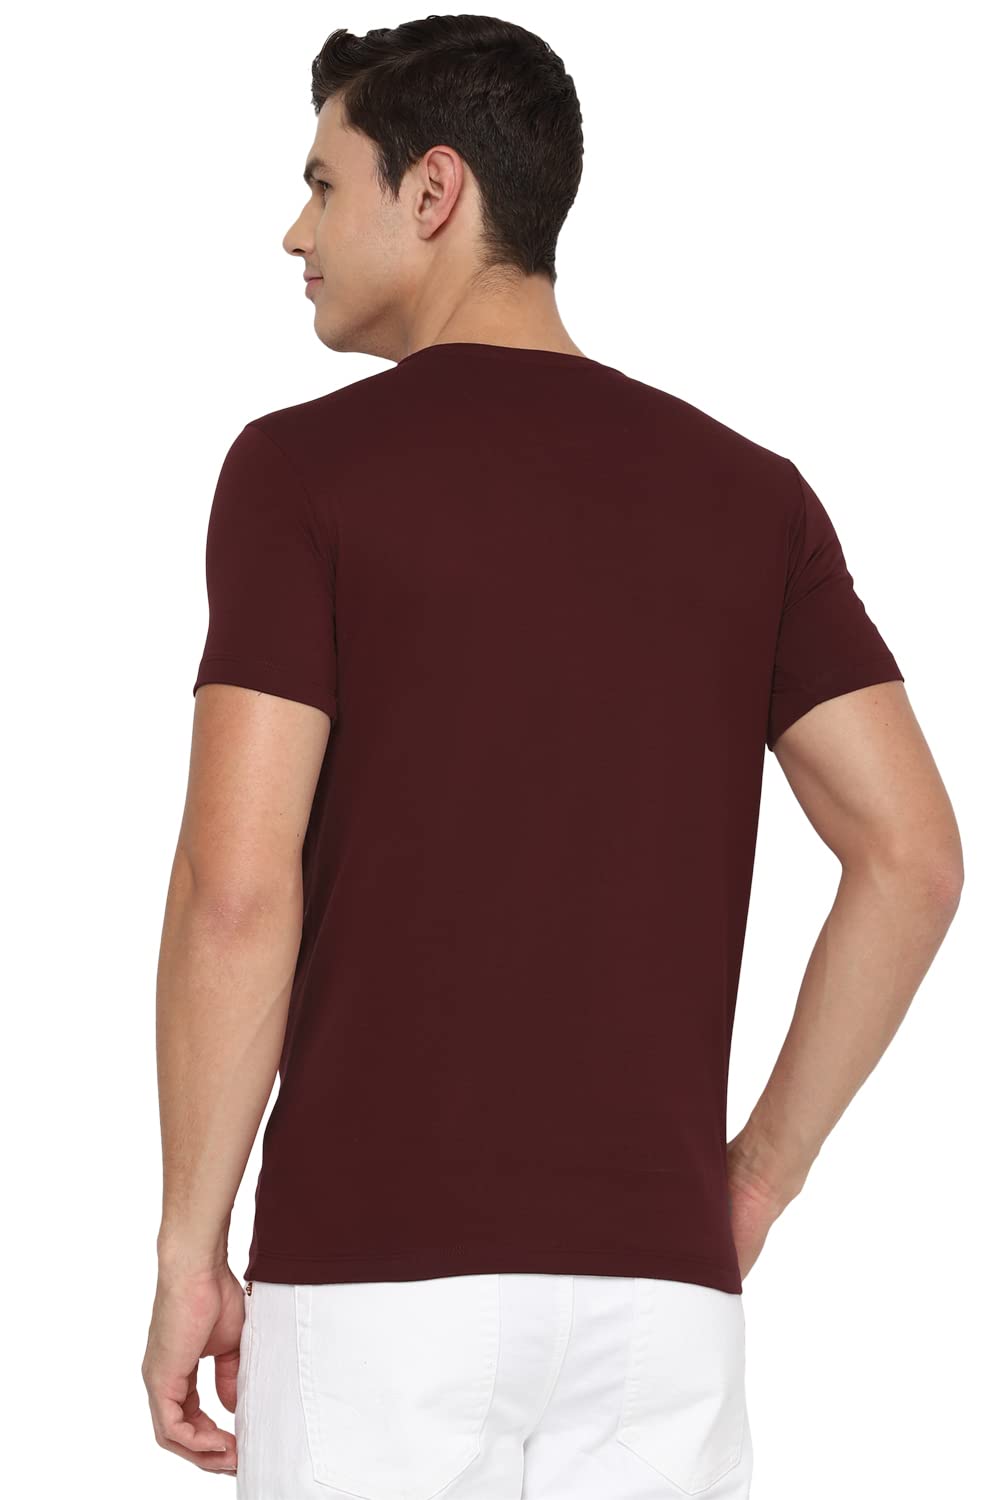 Allen Solly Men's Regular T-Shirt (ALKCVSGF297656_Maroon XL)